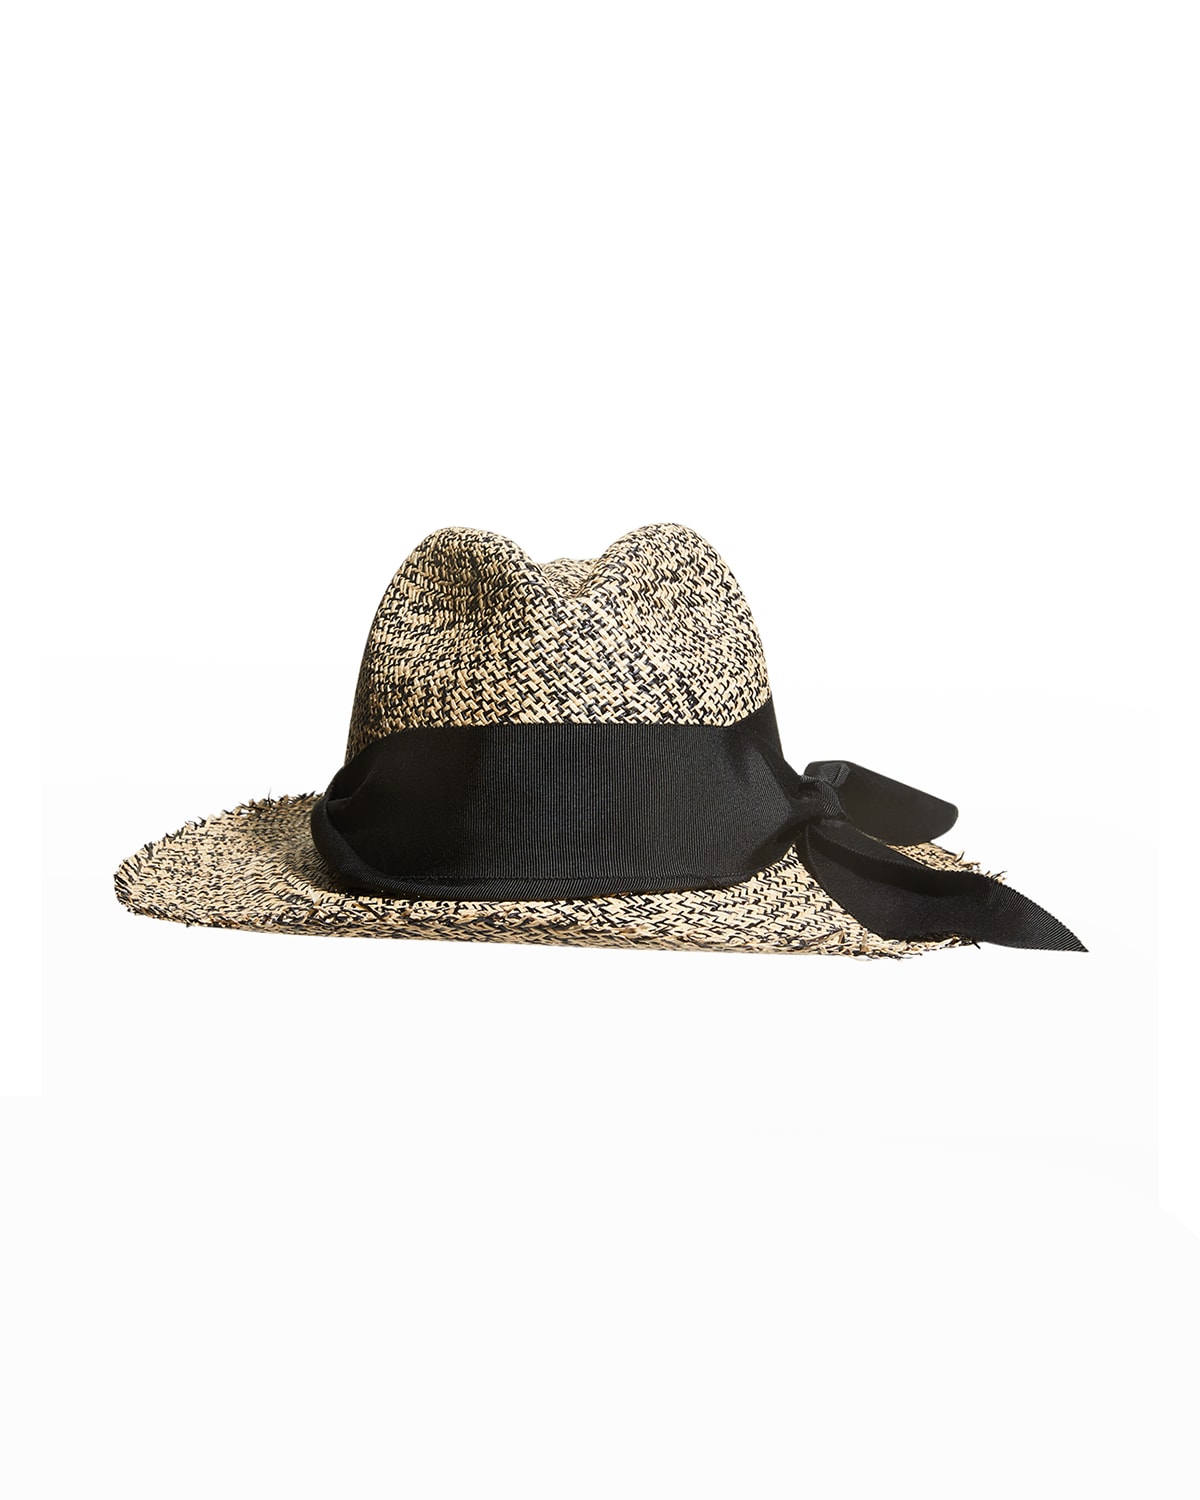 Sensi Studio Bicolor Ribbon Straw Panama Hat In Natural Black